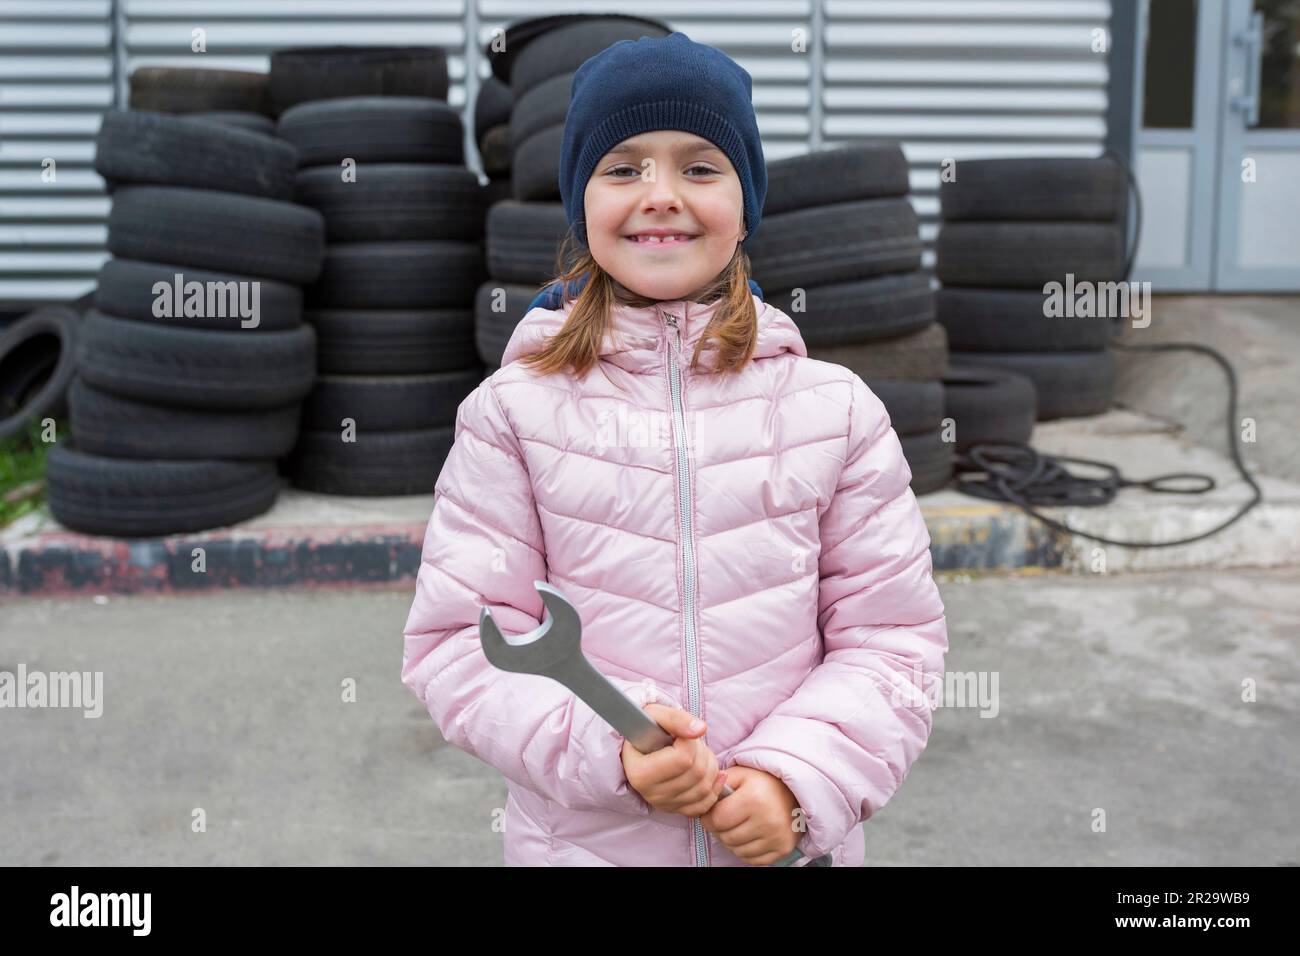 Ritratto di un bambino con una chiave in mano, sullo sfondo di un garage Foto Stock